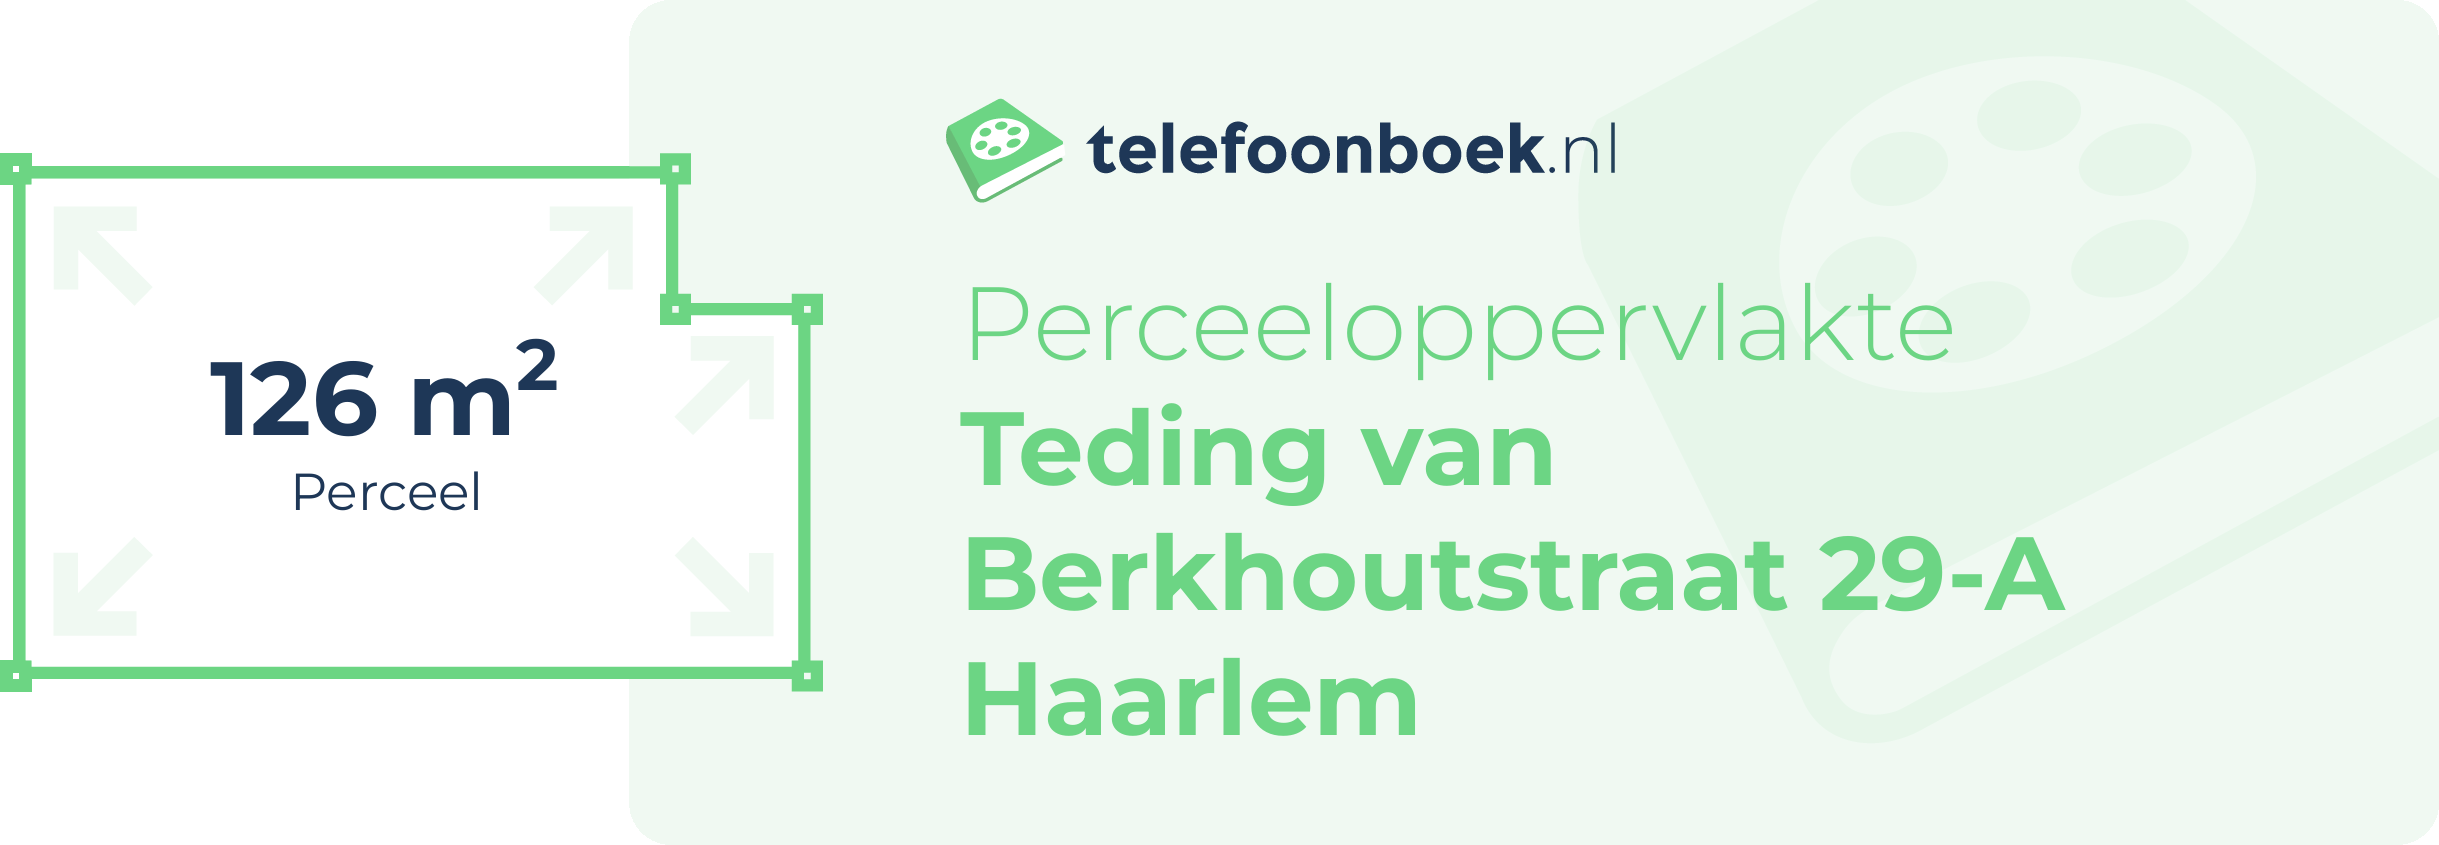 Perceeloppervlakte Teding Van Berkhoutstraat 29-A Haarlem